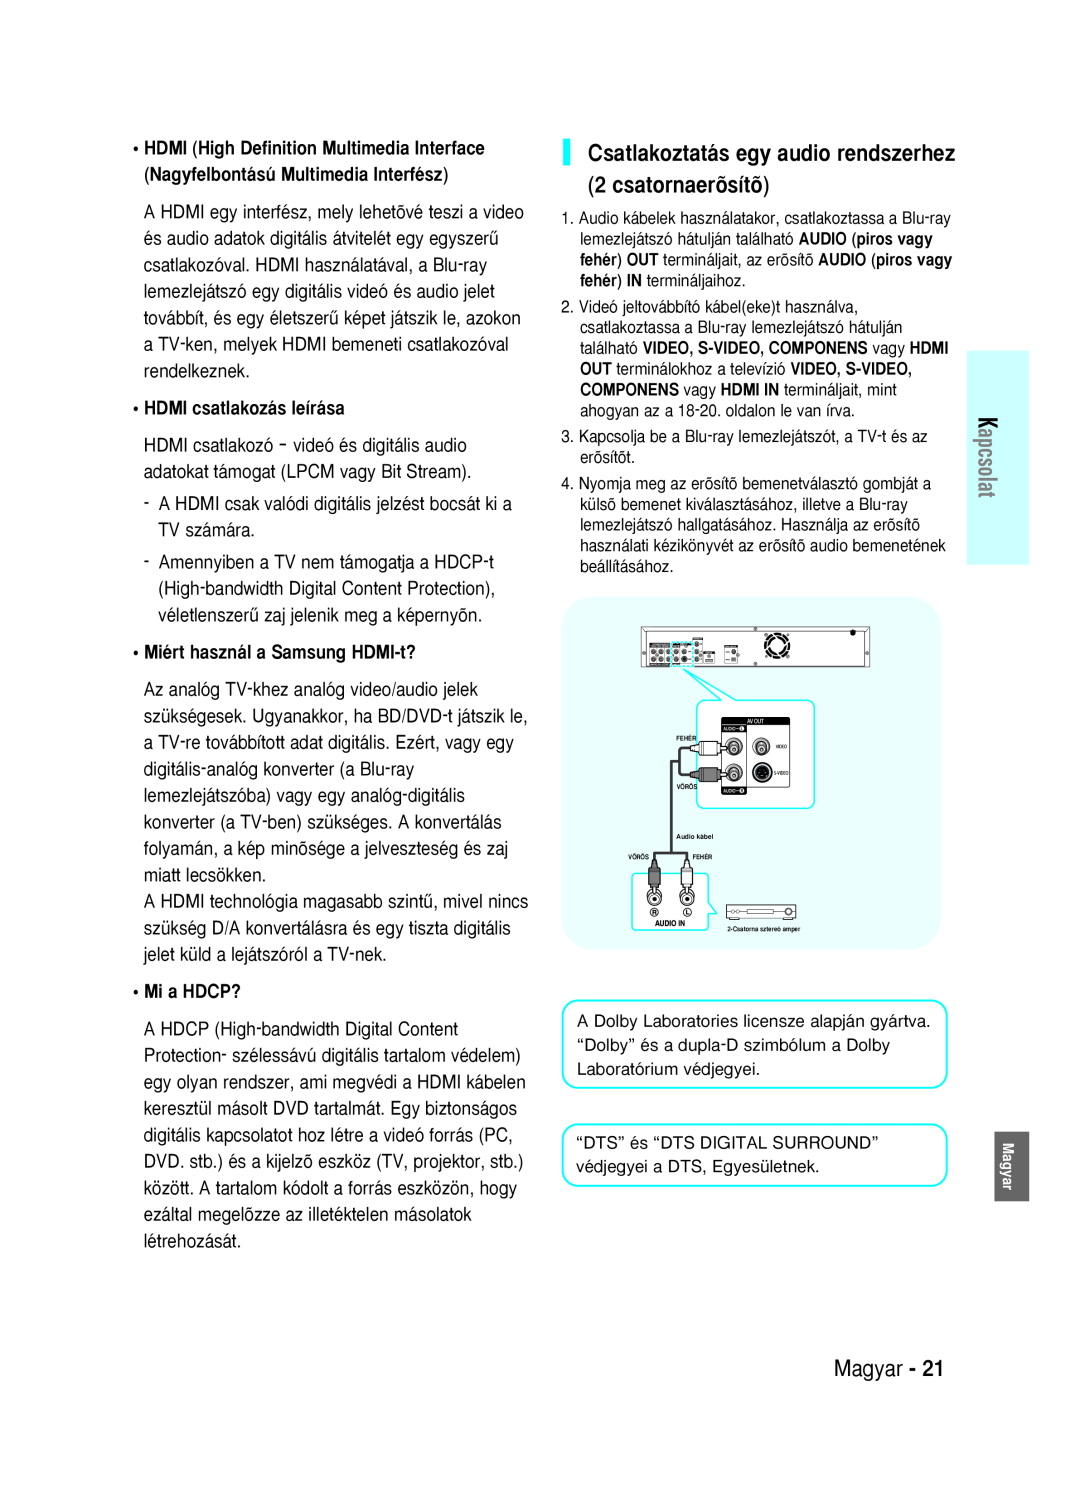 Samsung BD-P1000/XEG Csatlakoztatás egy audio rendszerhez 2 csatornaerõsítõ, HDMI csatlakozás leírása, Mi a HDCP?, Magyar 